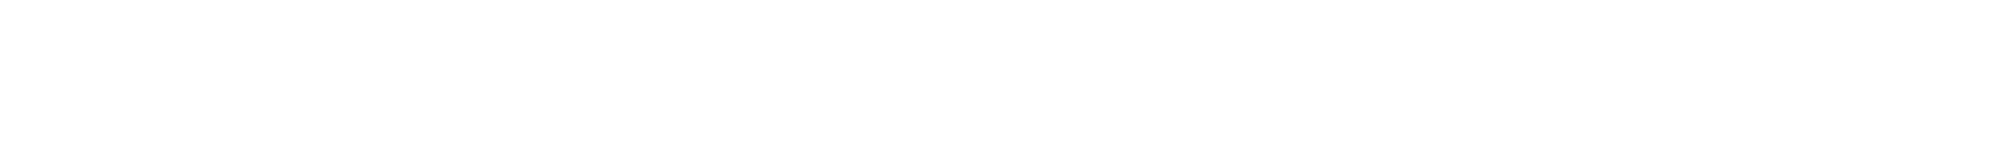 dukami-banner-shape